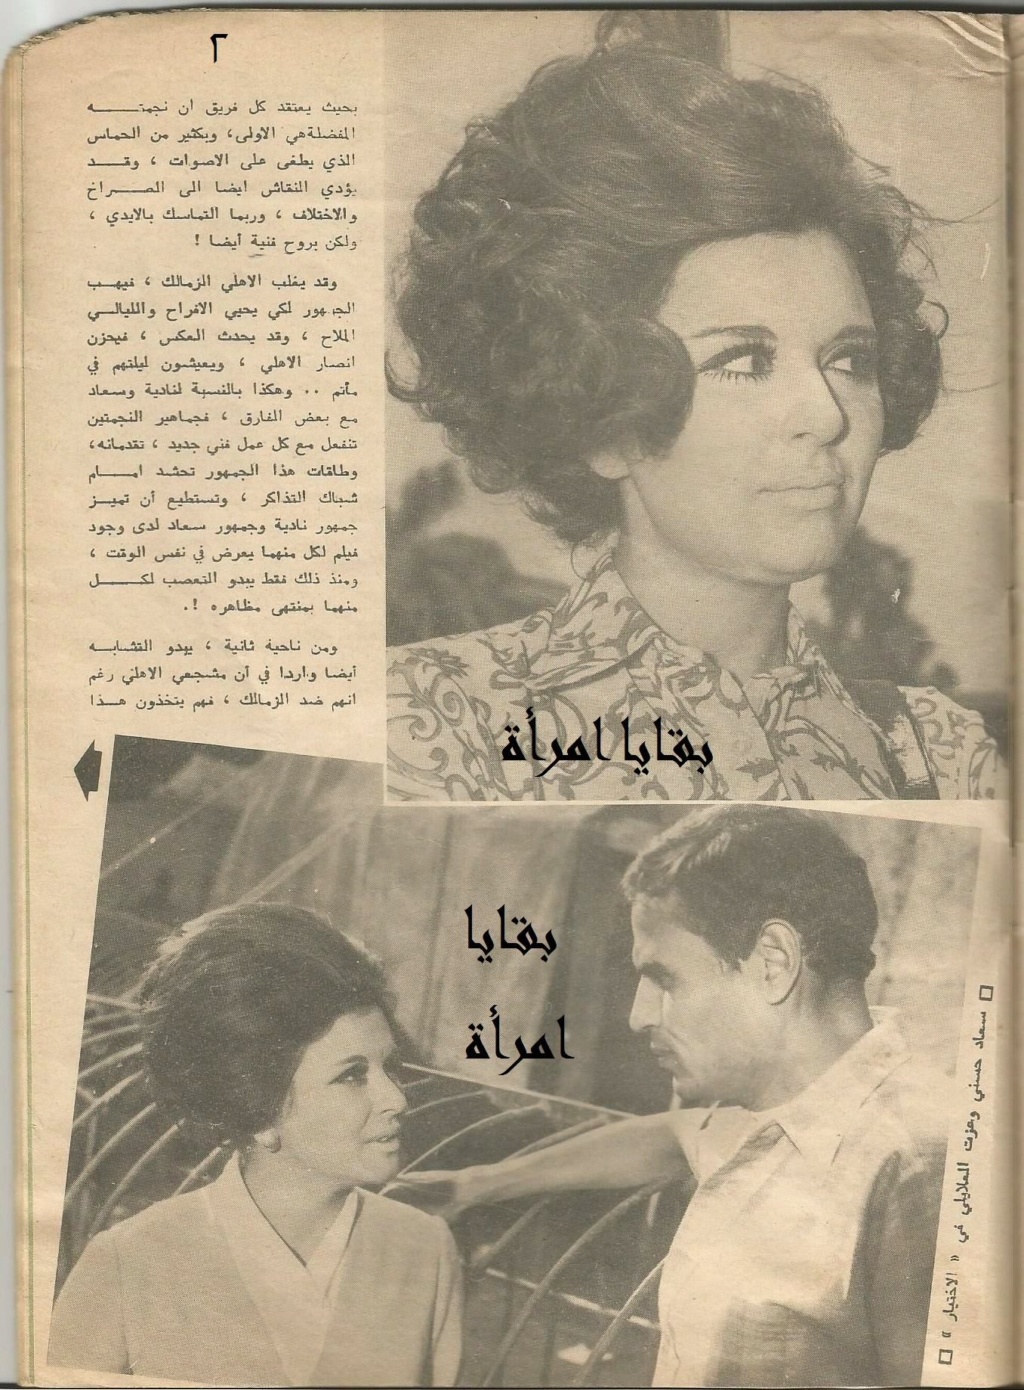 1971 - مقال صحفي : لاغالب ولا مغلوب في مباراة العشر سنوات بين سعاد حسني ونادية لطفي 1971 م 2215